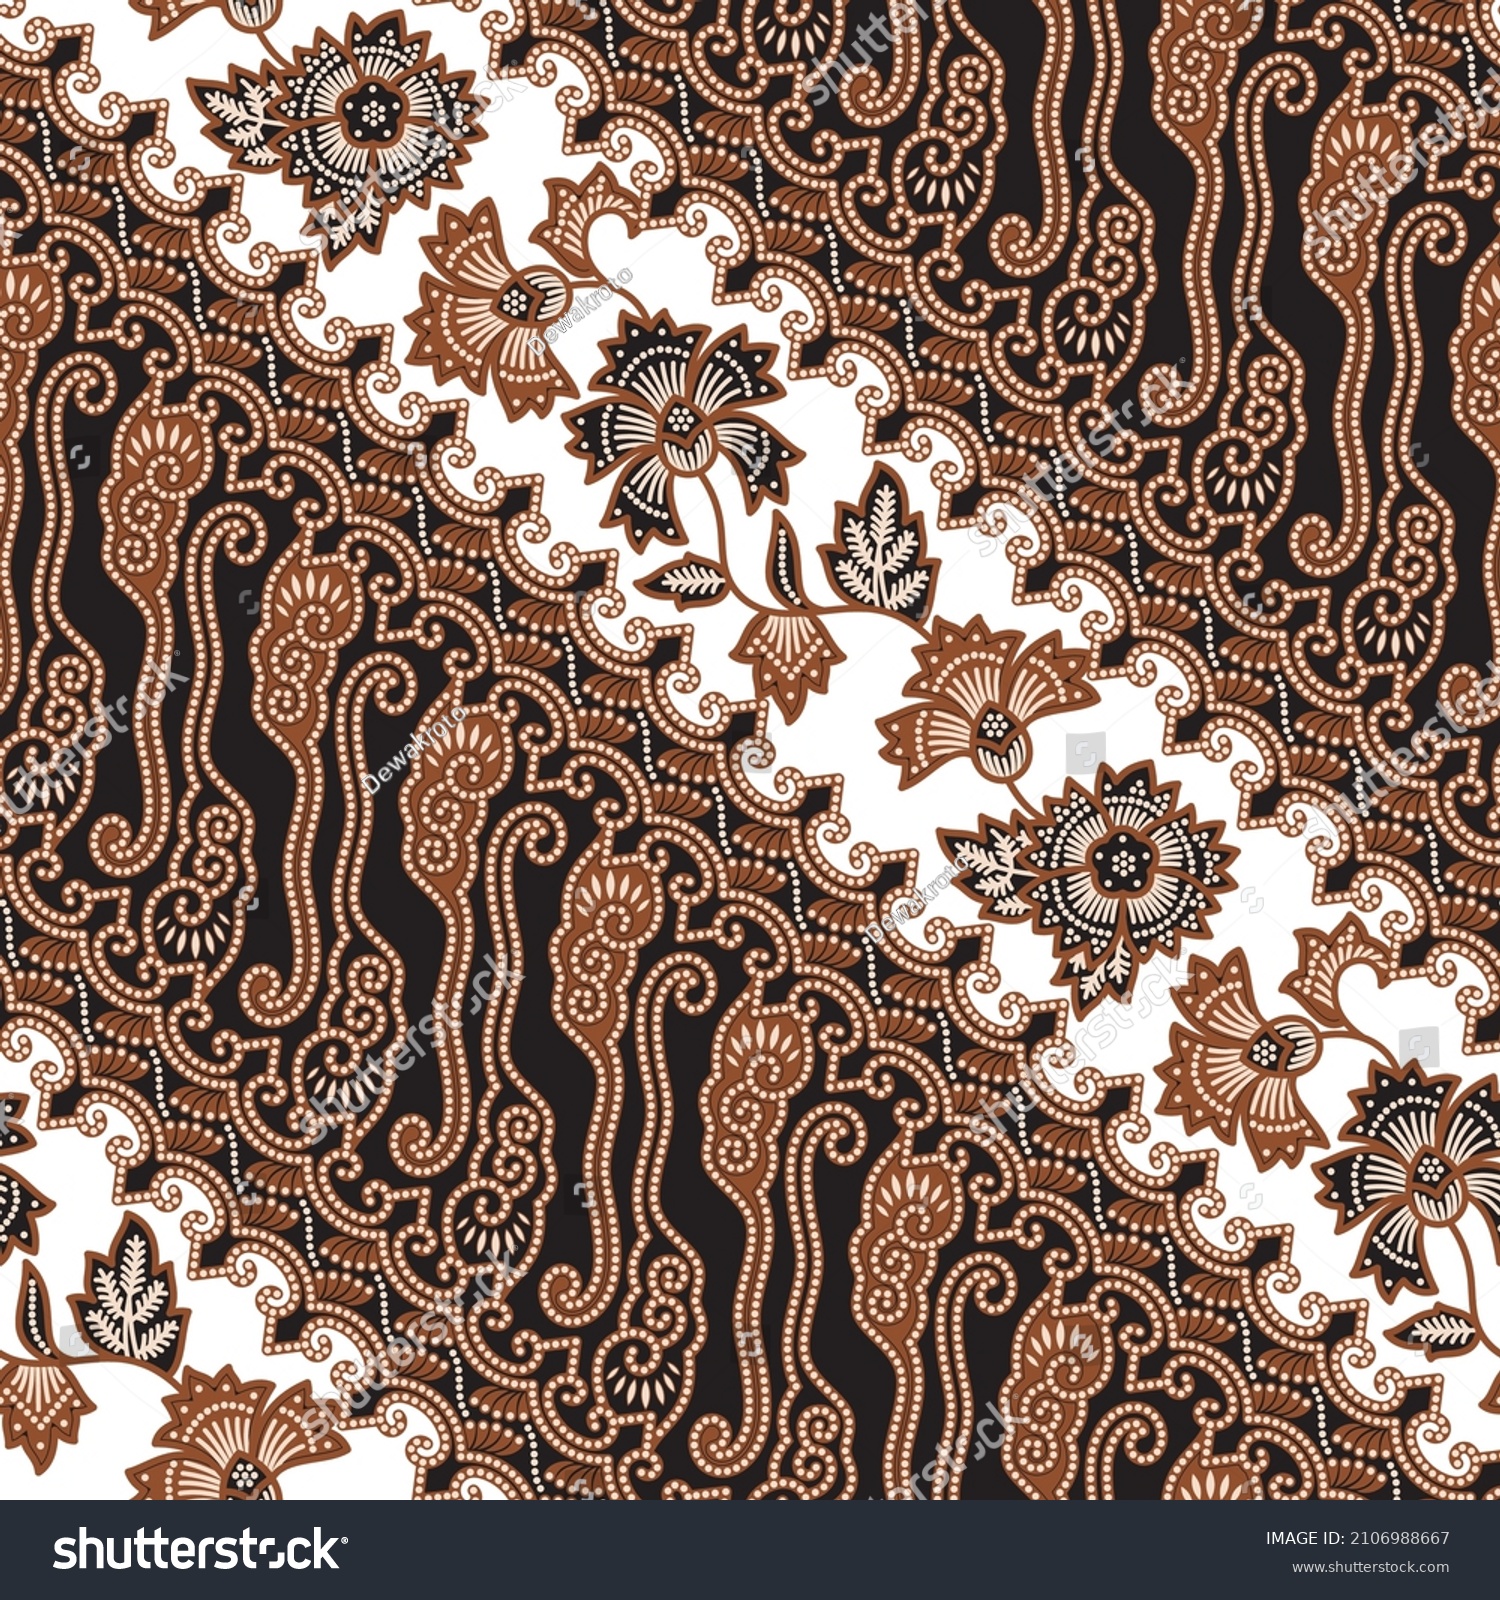 SVG of Traditional Javanese Batik, illustration of Parang and floral pattern in dark and light style, version 002.
Batik Jawa tradisional, gaya ilustrasi perpaduan dari motif Parang dan kembang, versi 002. svg